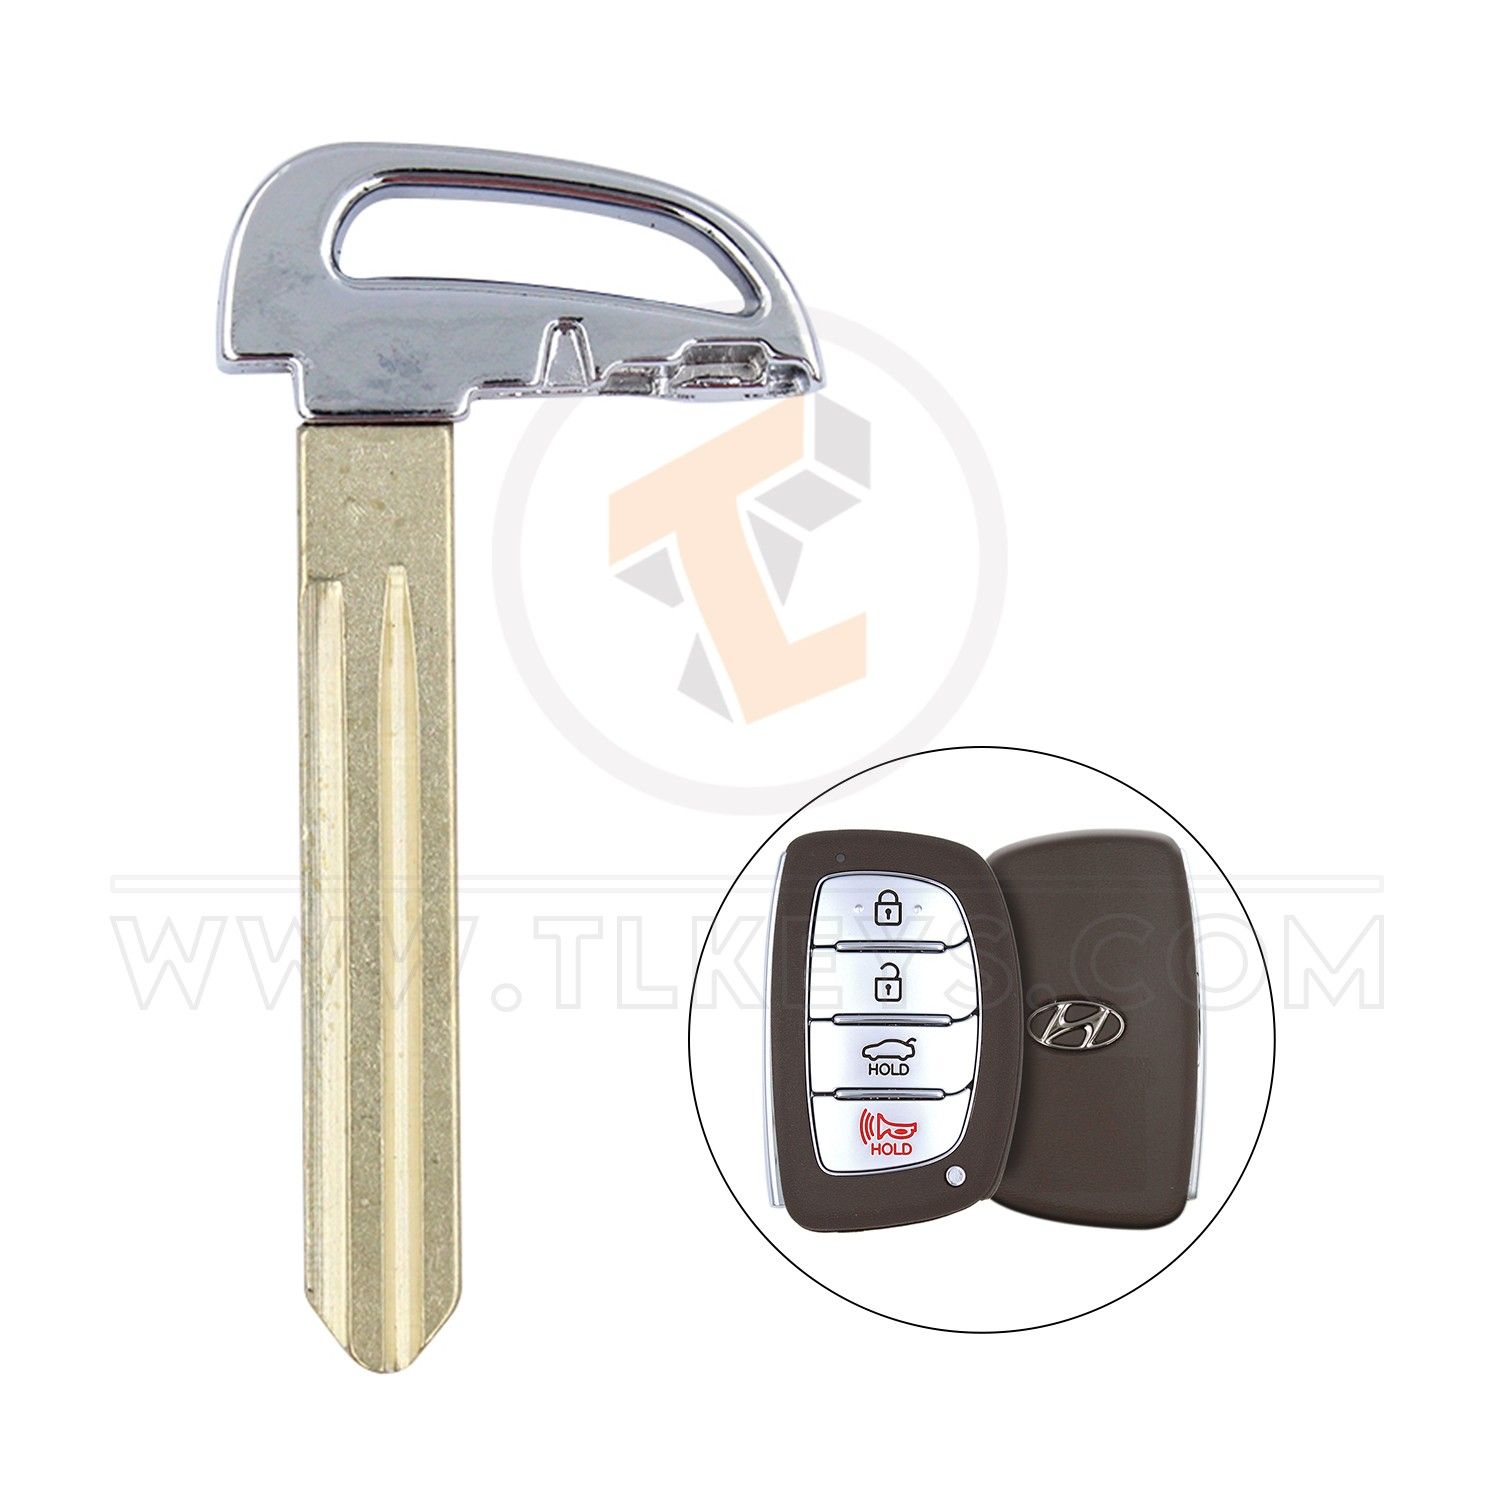 Hyundai Elantra 2014 Emergency Blank Key Blade 81996-B4520 Aftermarket Emergency Keys